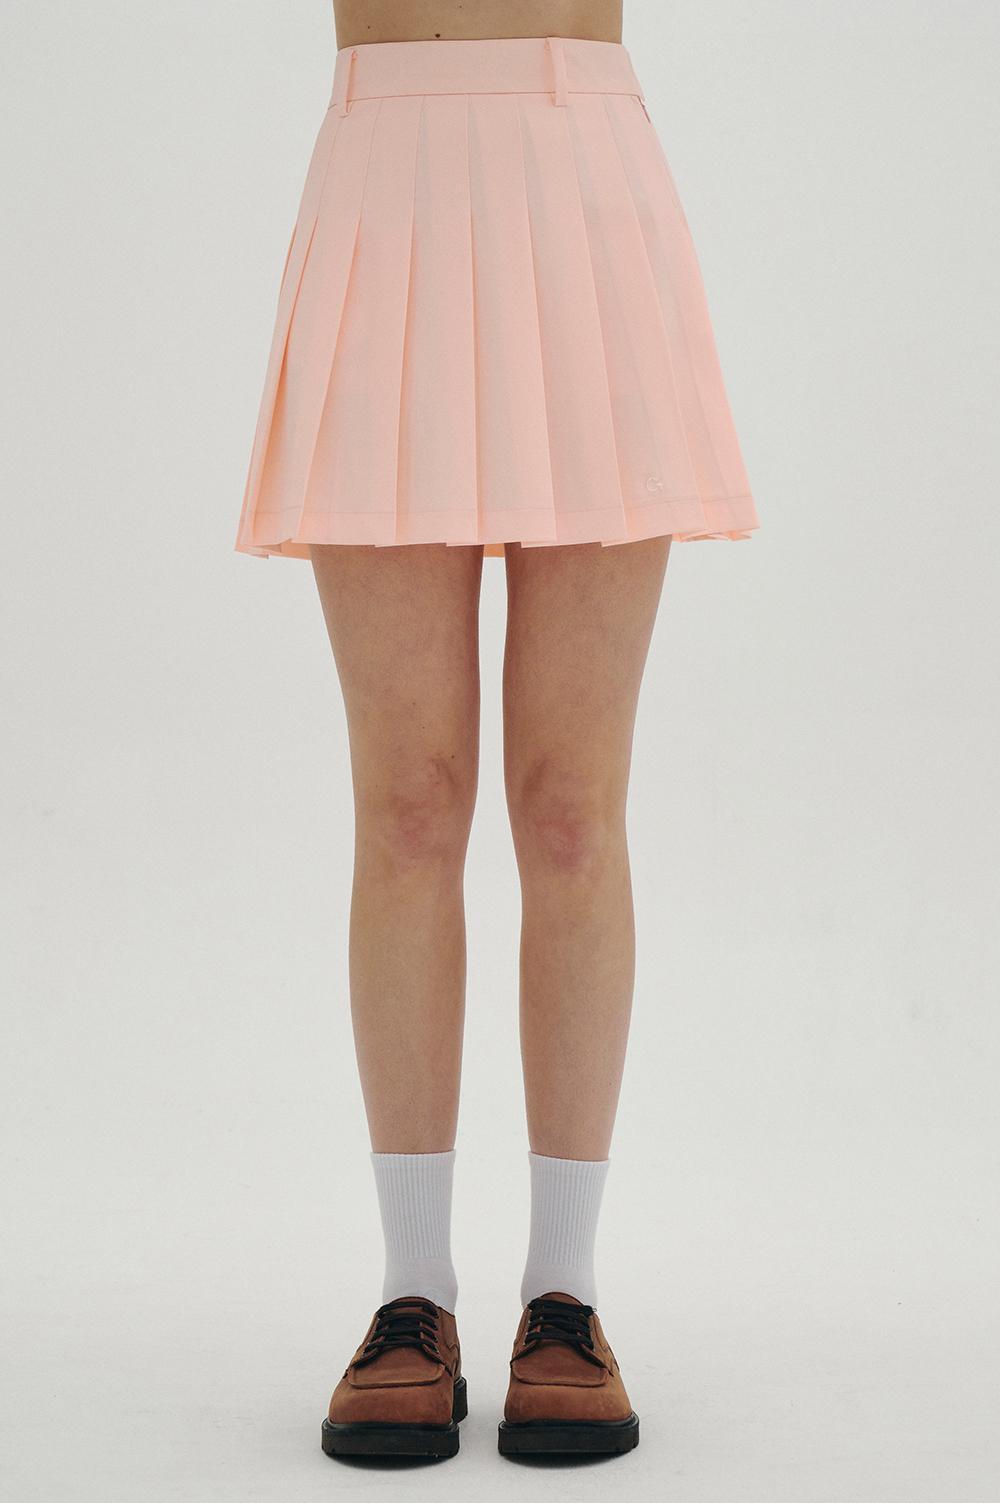 clove - Basic Pleated Skirt (Coral)